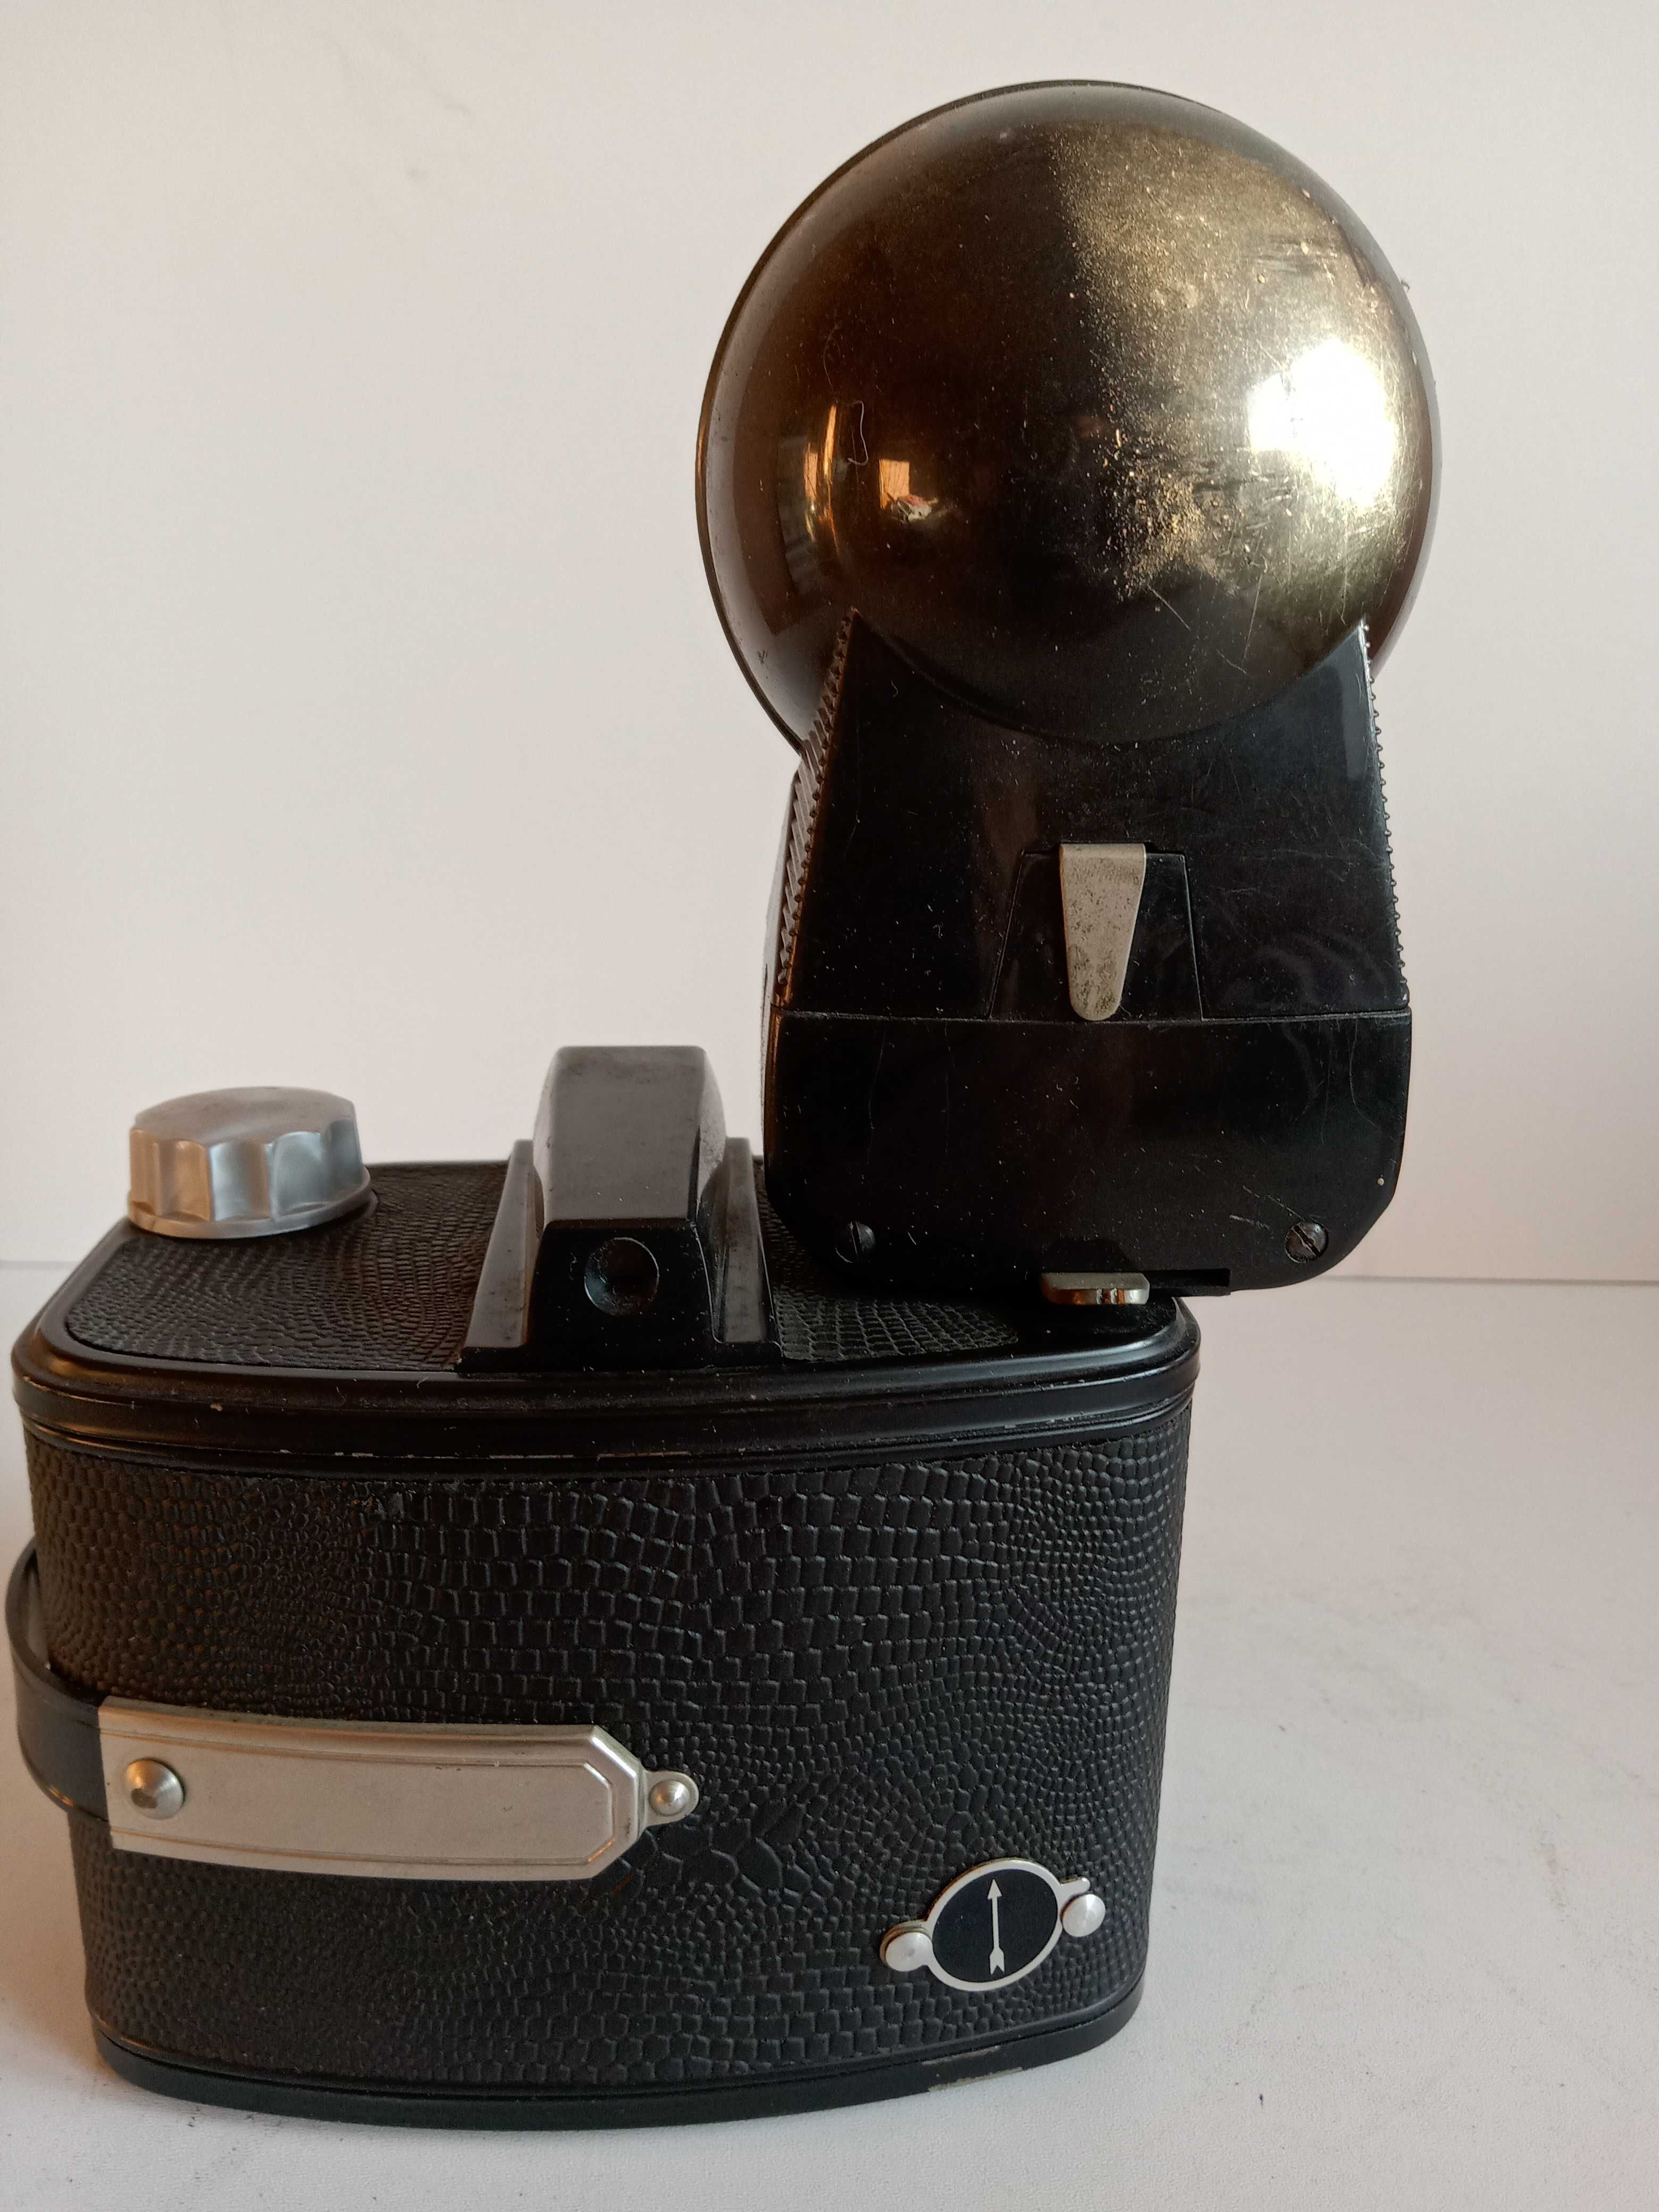 Kolekcjonerski aparat analogowy AGFA